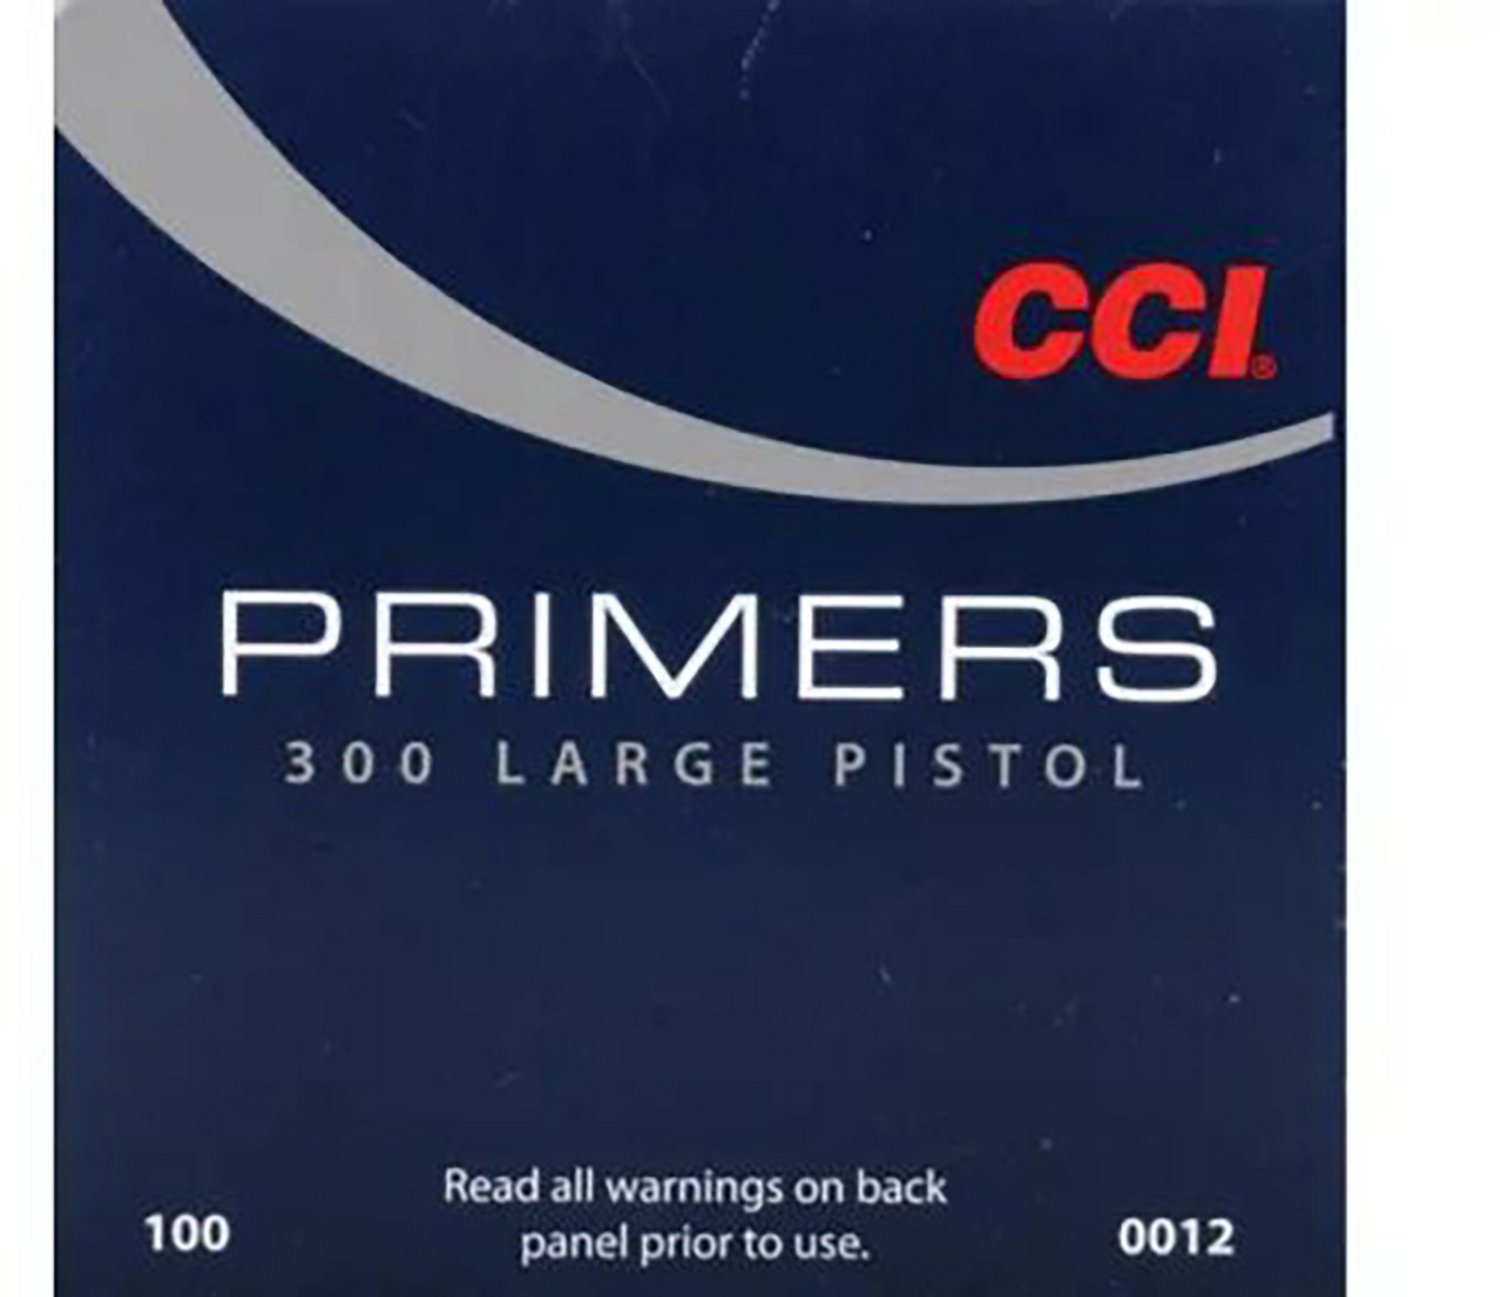 CCI Large Pistol Primers No.300 